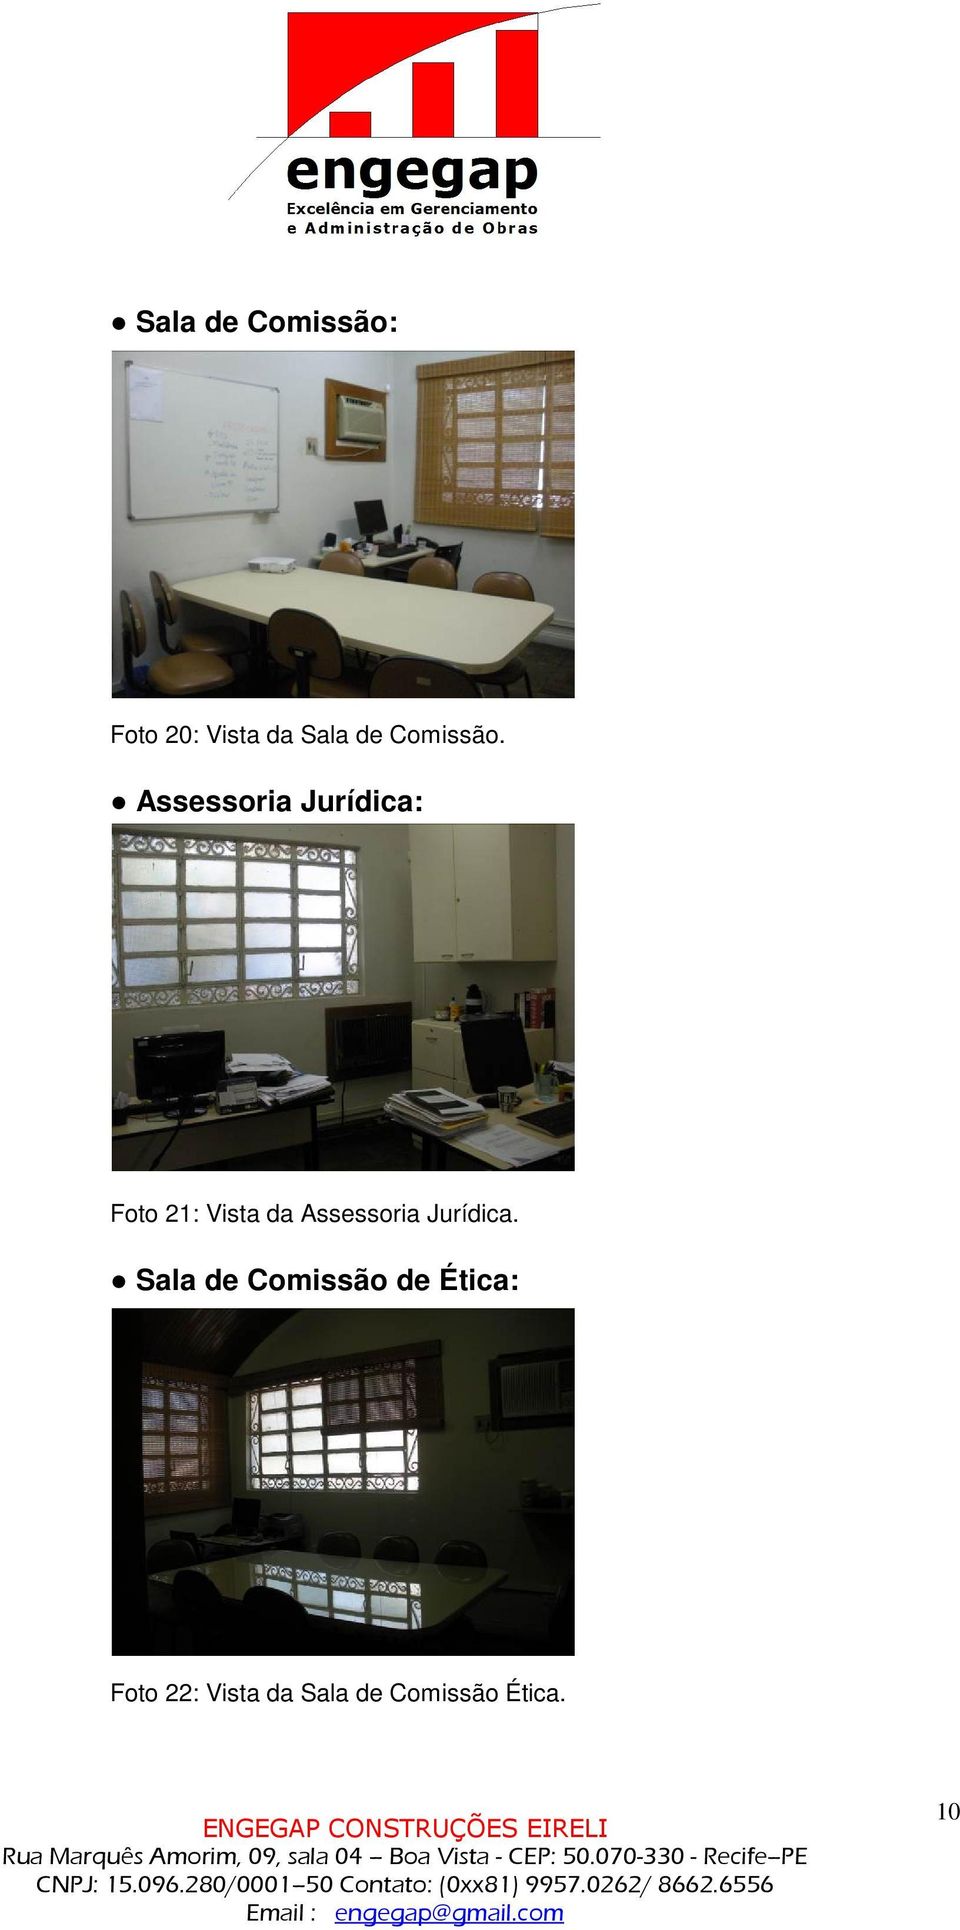 Assessoria Jurídica: Foto 21: Vista da